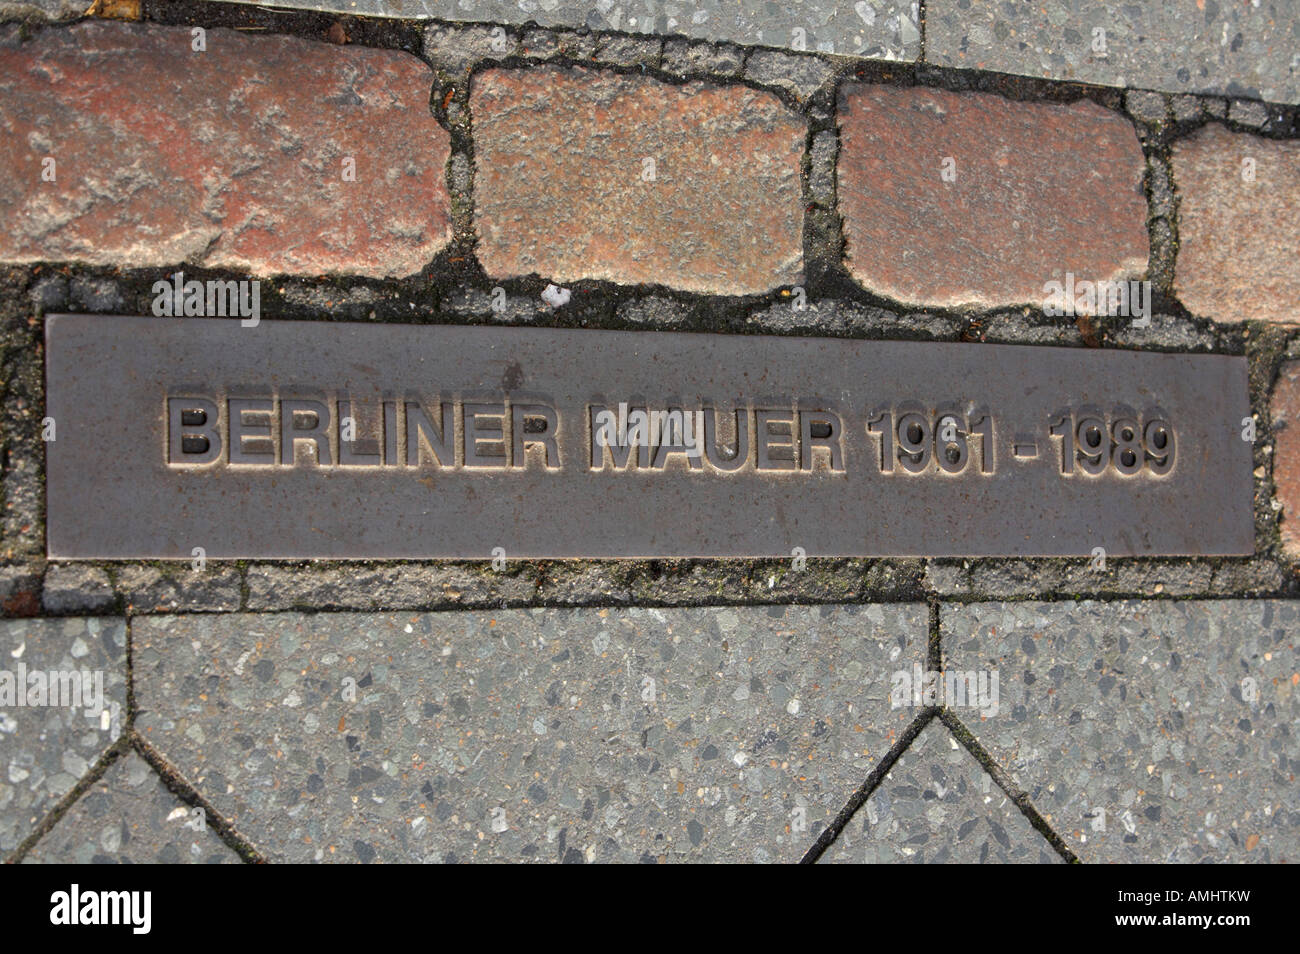 Double rangée de briques à Berlin pour marquer la position du mur de Berlin, Berliner mauer Berlin Allemagne Banque D'Images